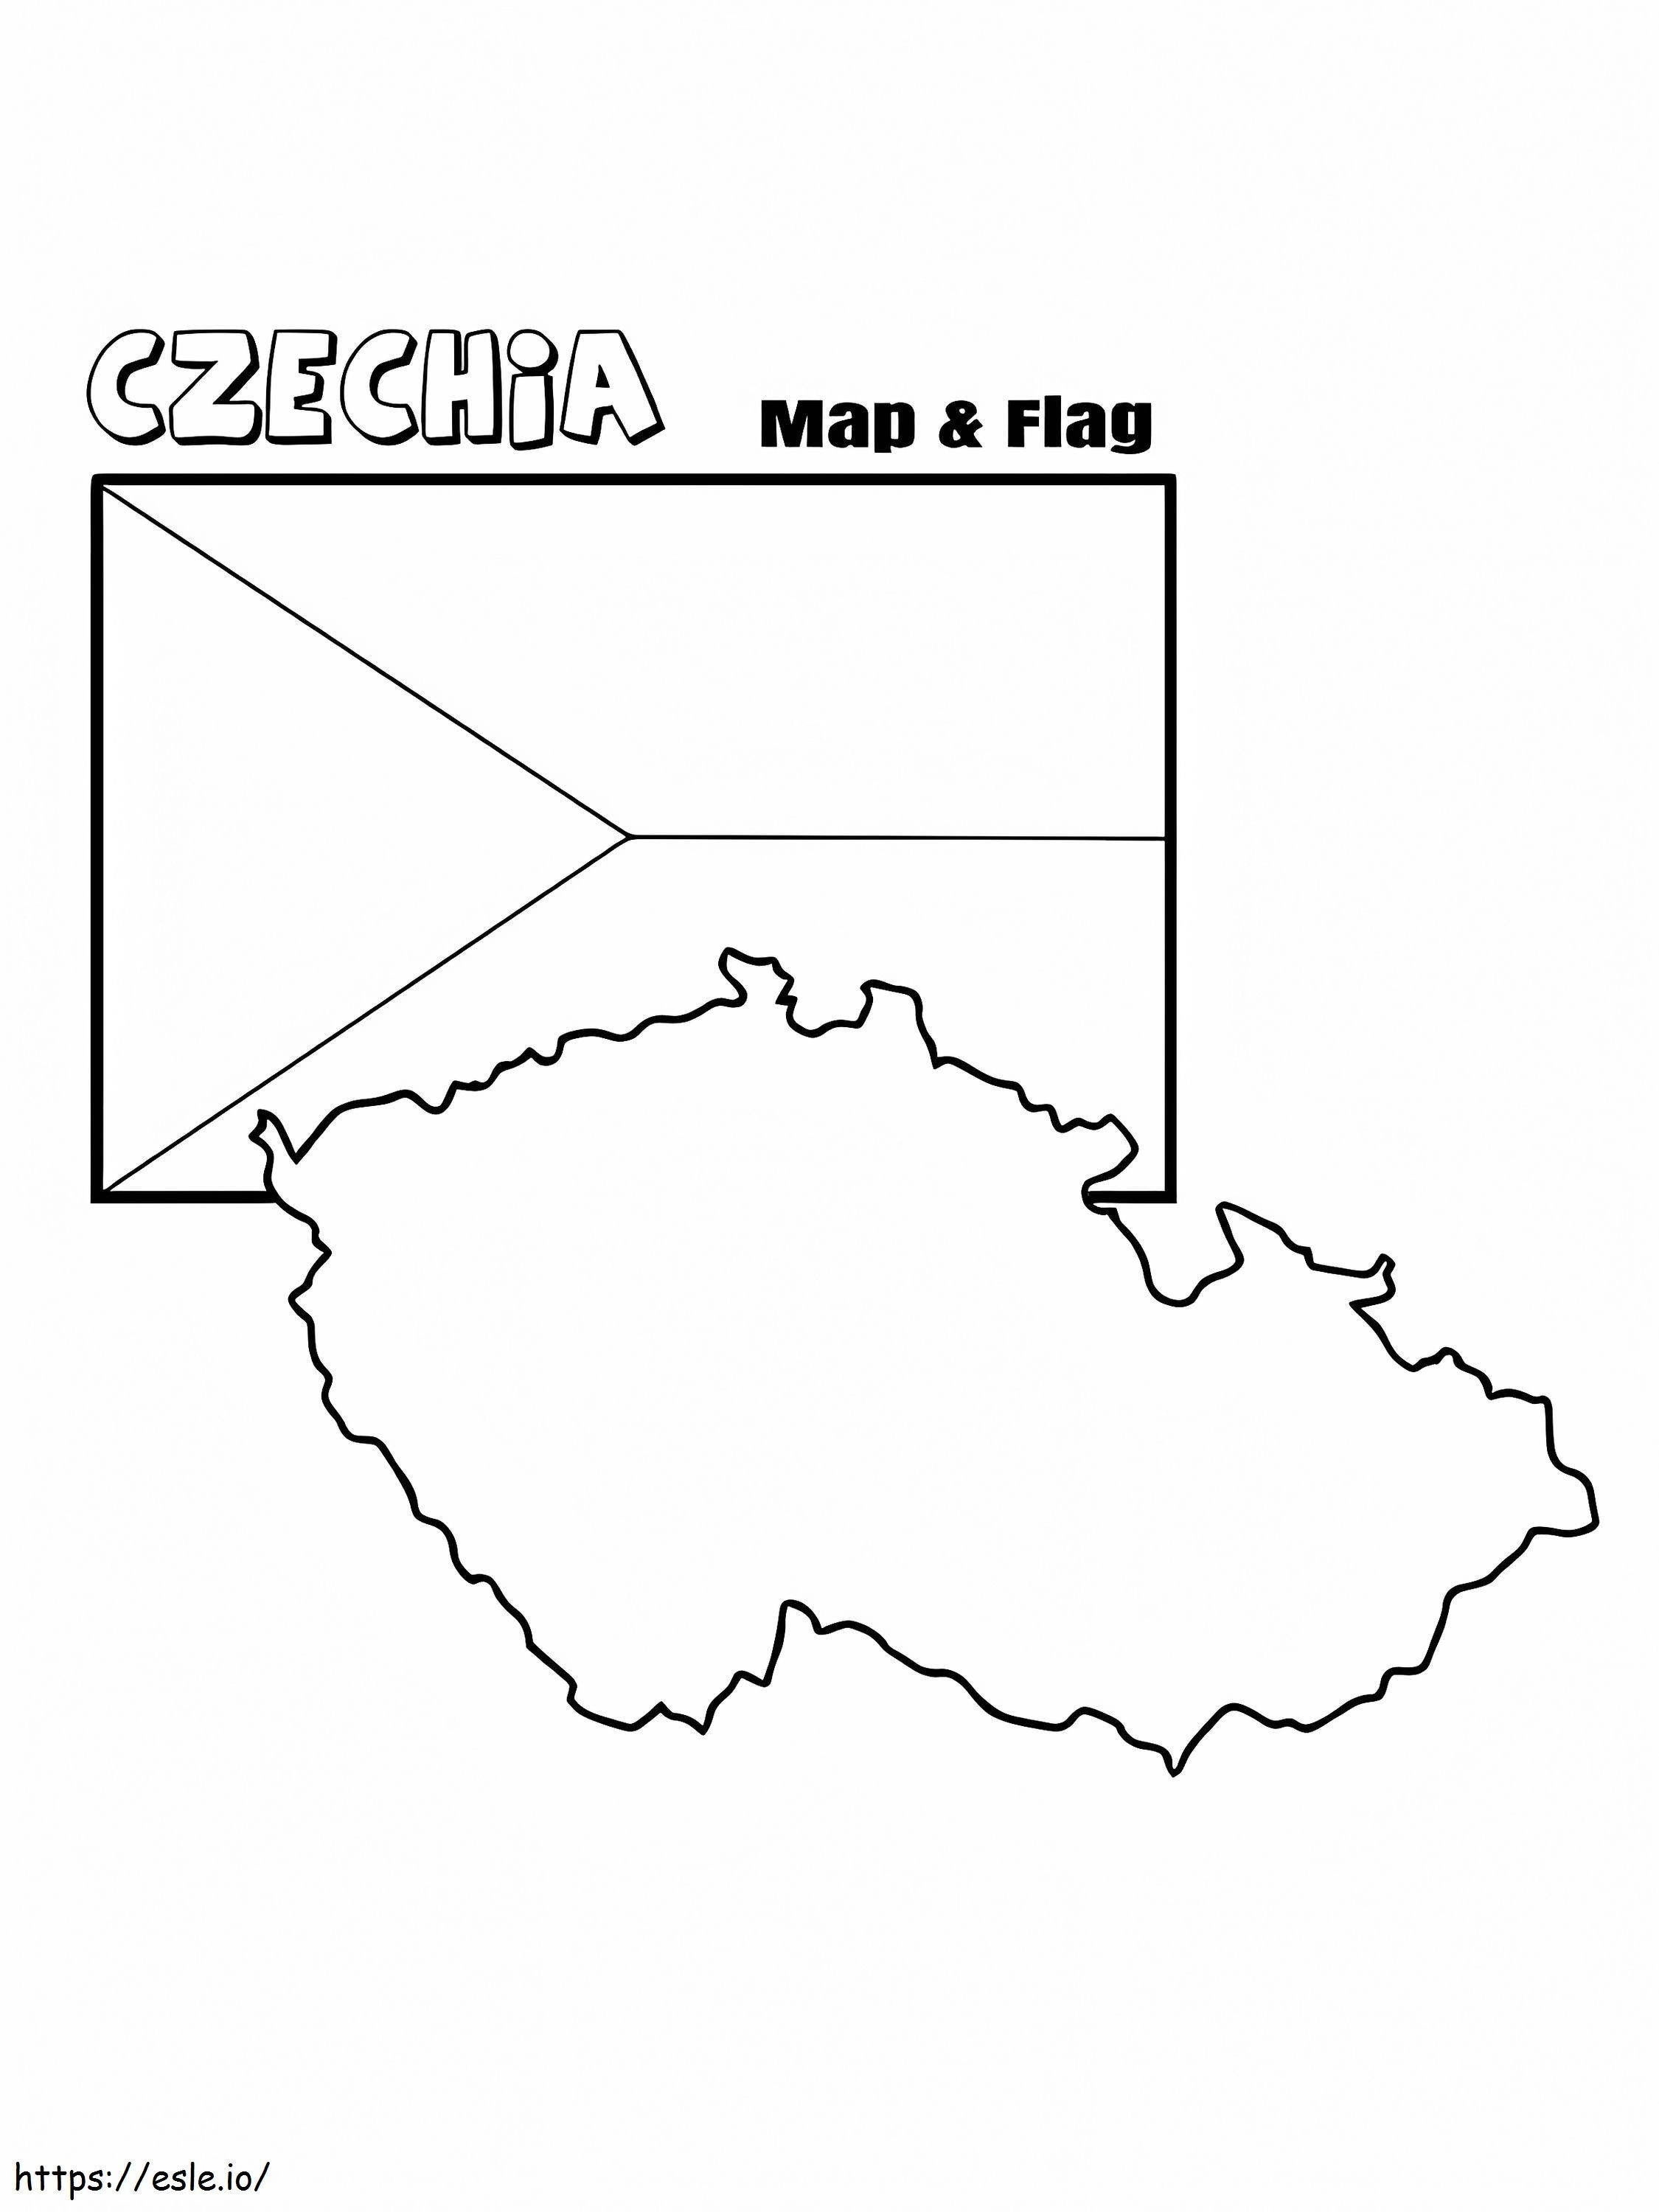 Bandiera E Mappa Della Cechia da colorare